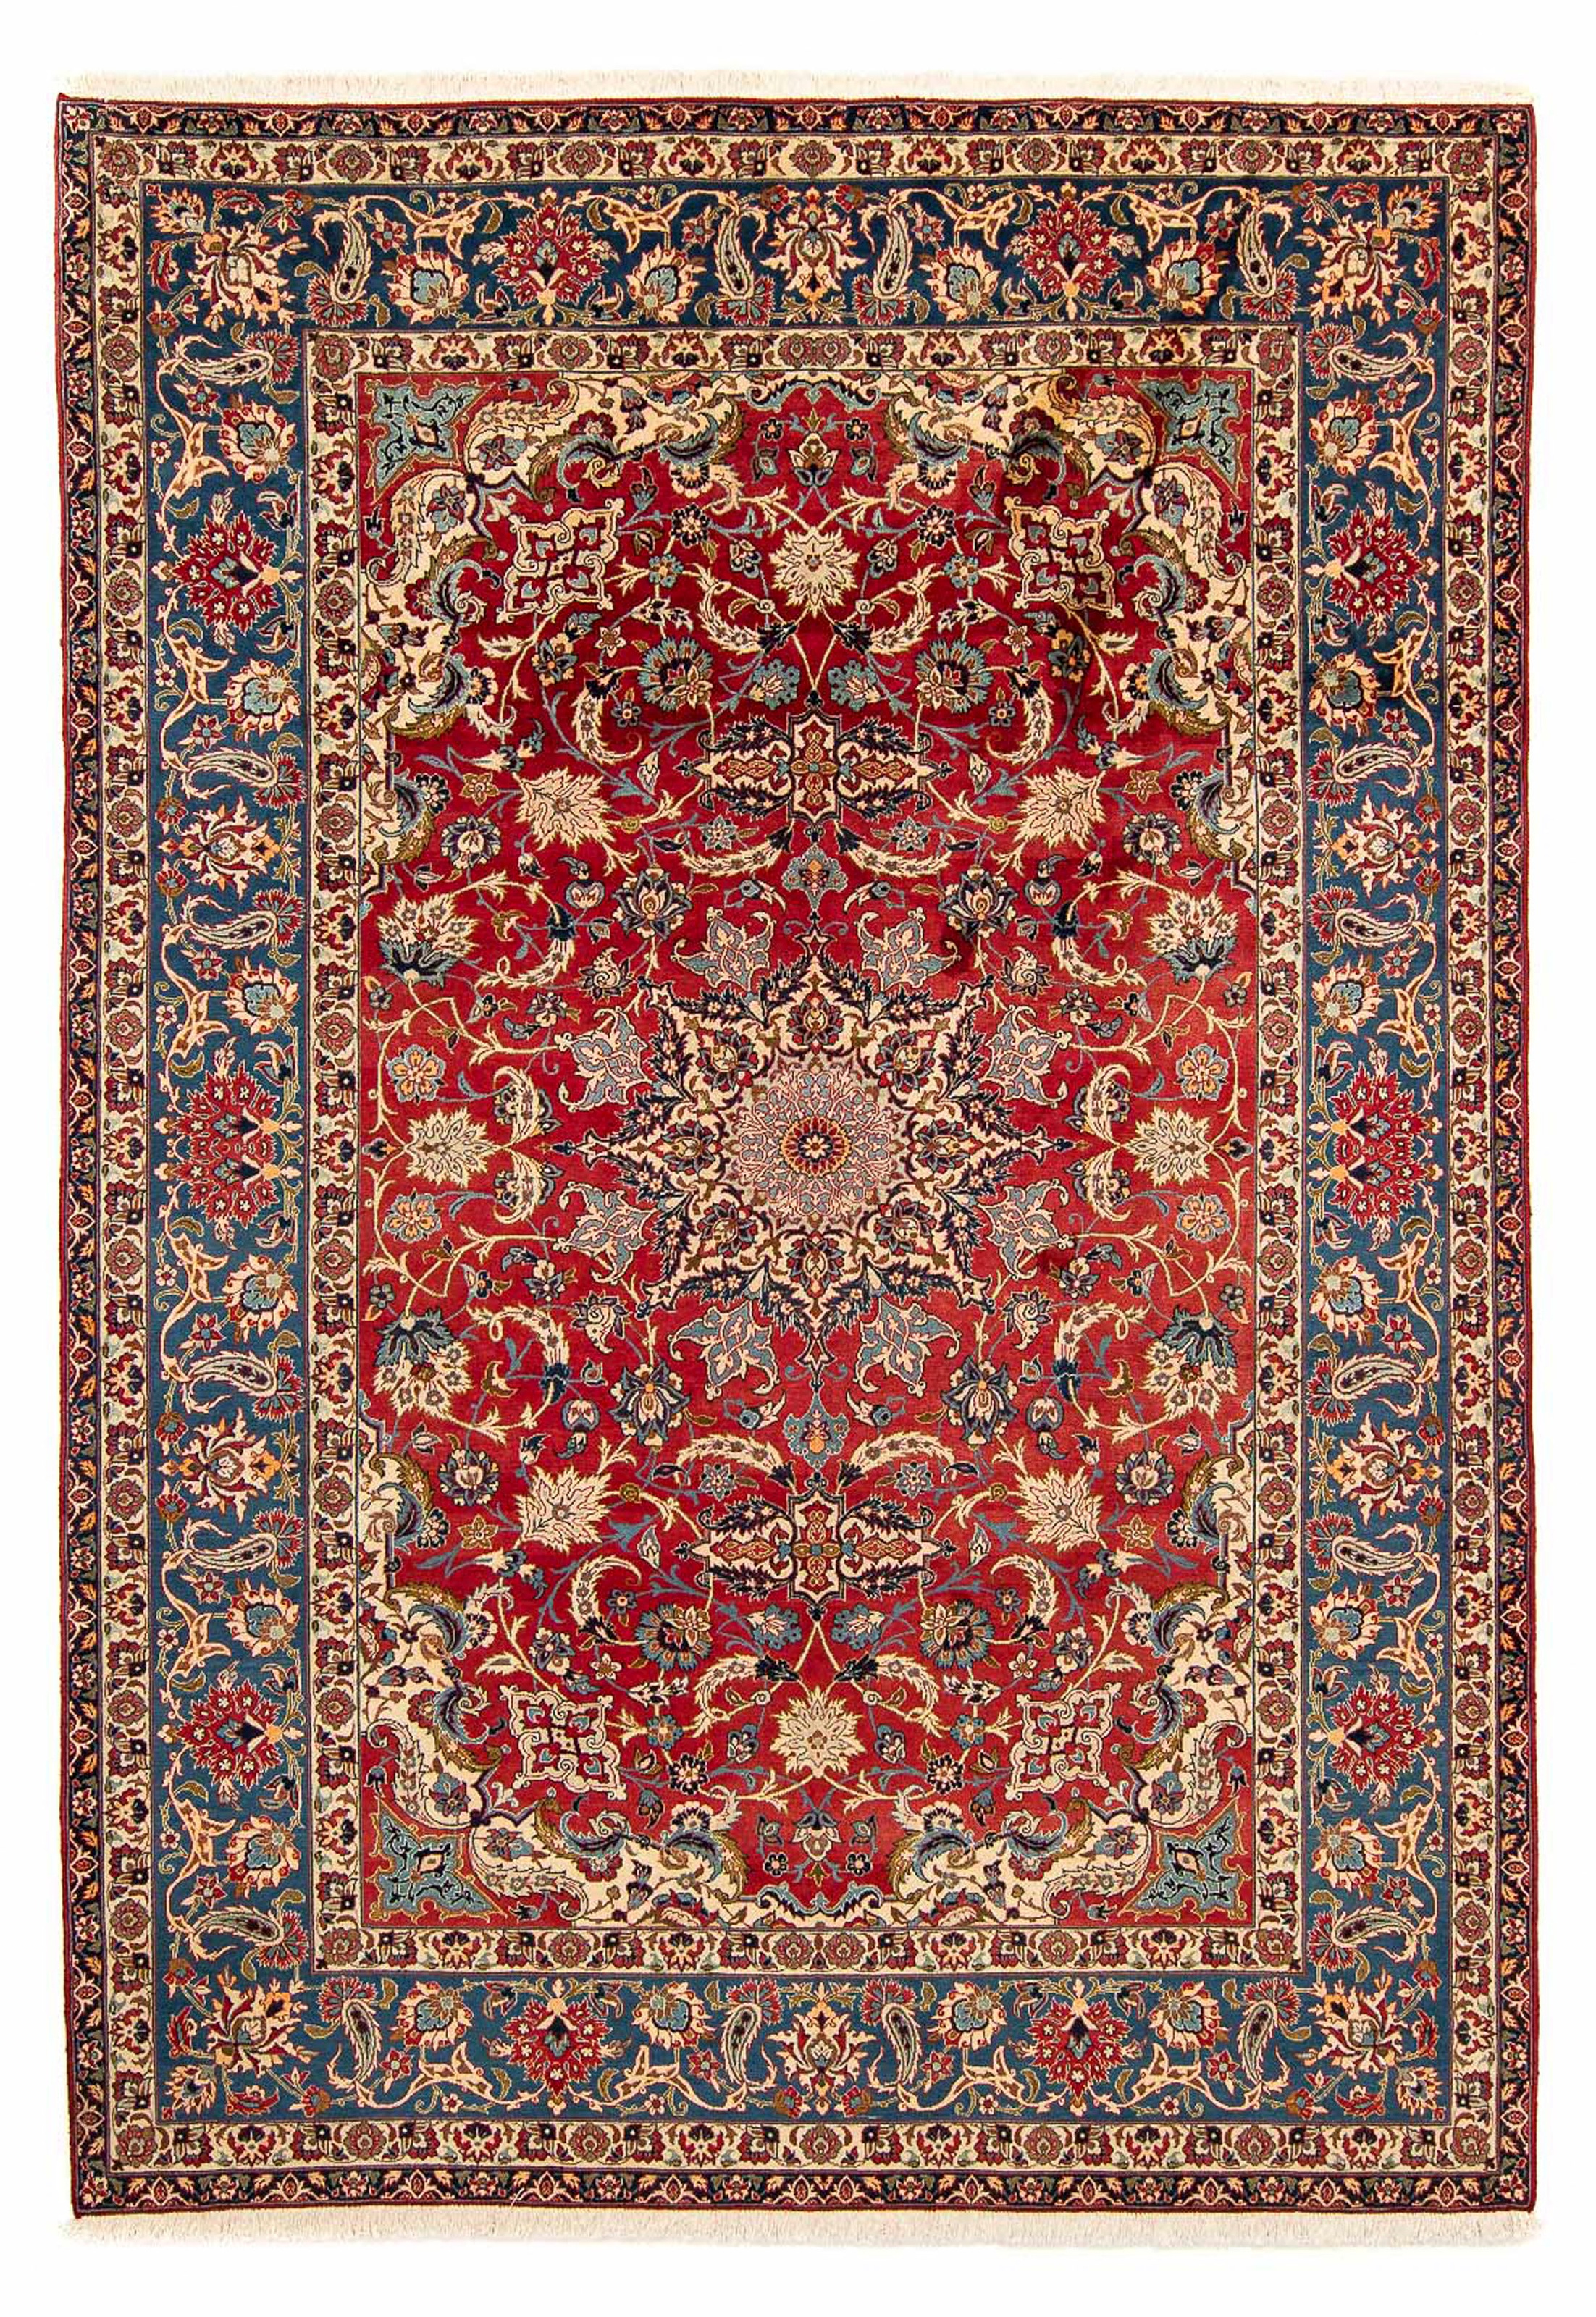 Klassisch Orient Teppich Orientalisch dicht gewebt Wohnzimmer Rot